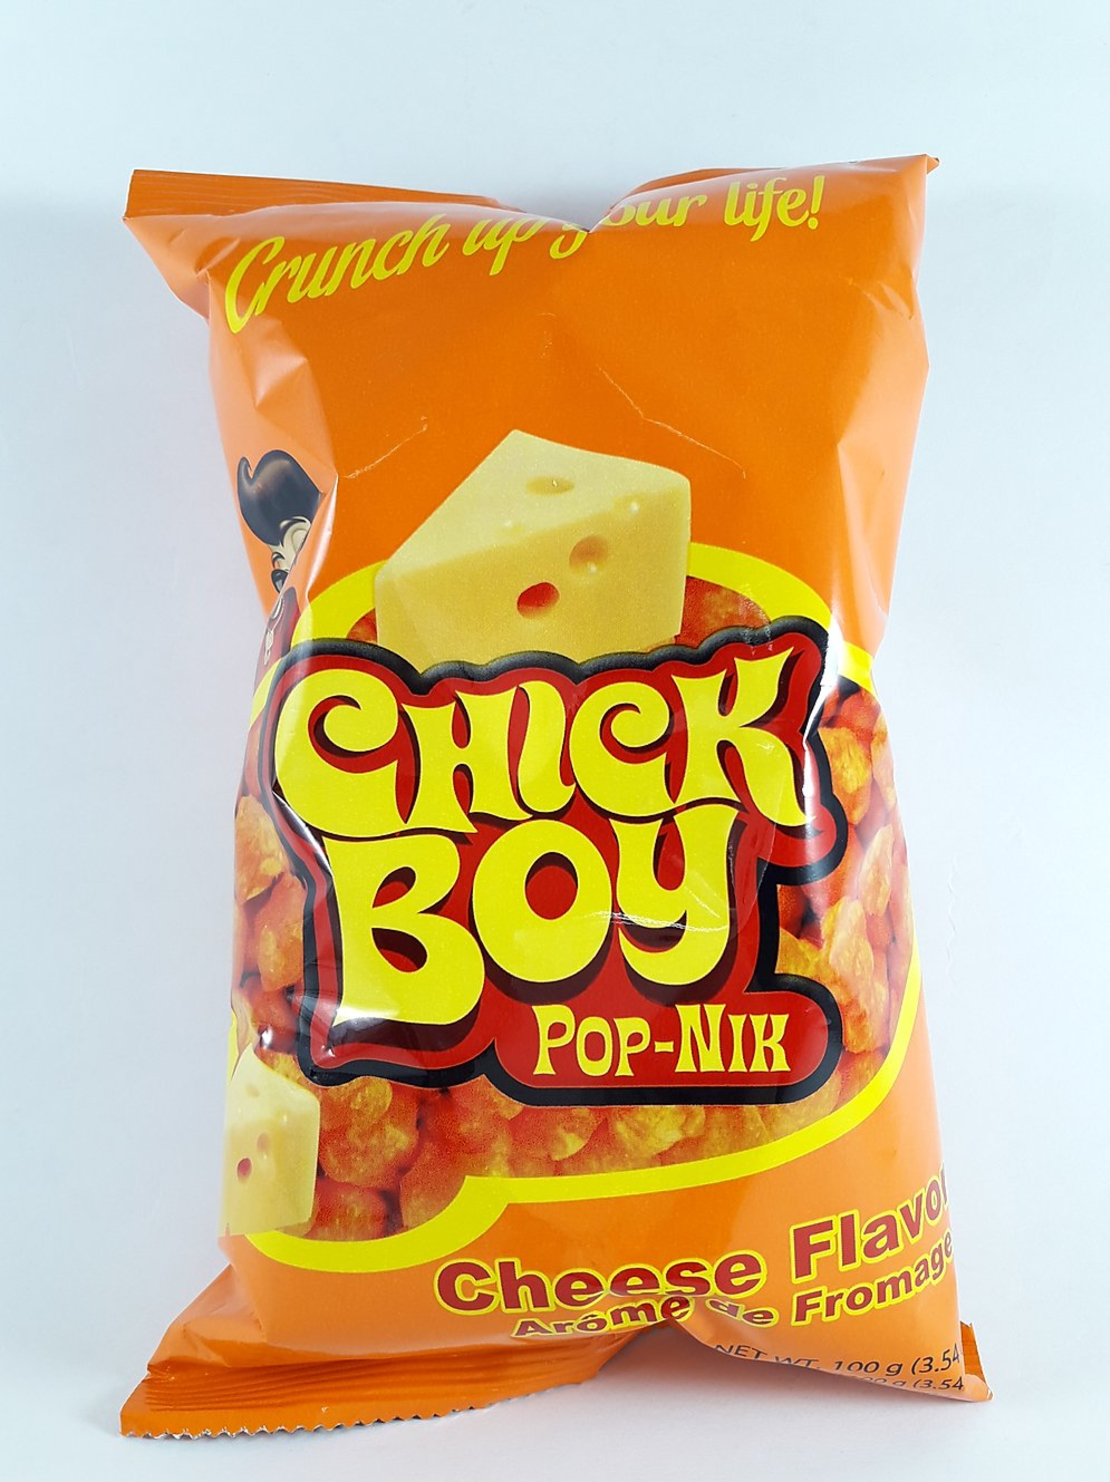 Chick Boy Pop -Nik - Cheese Flavor 100g